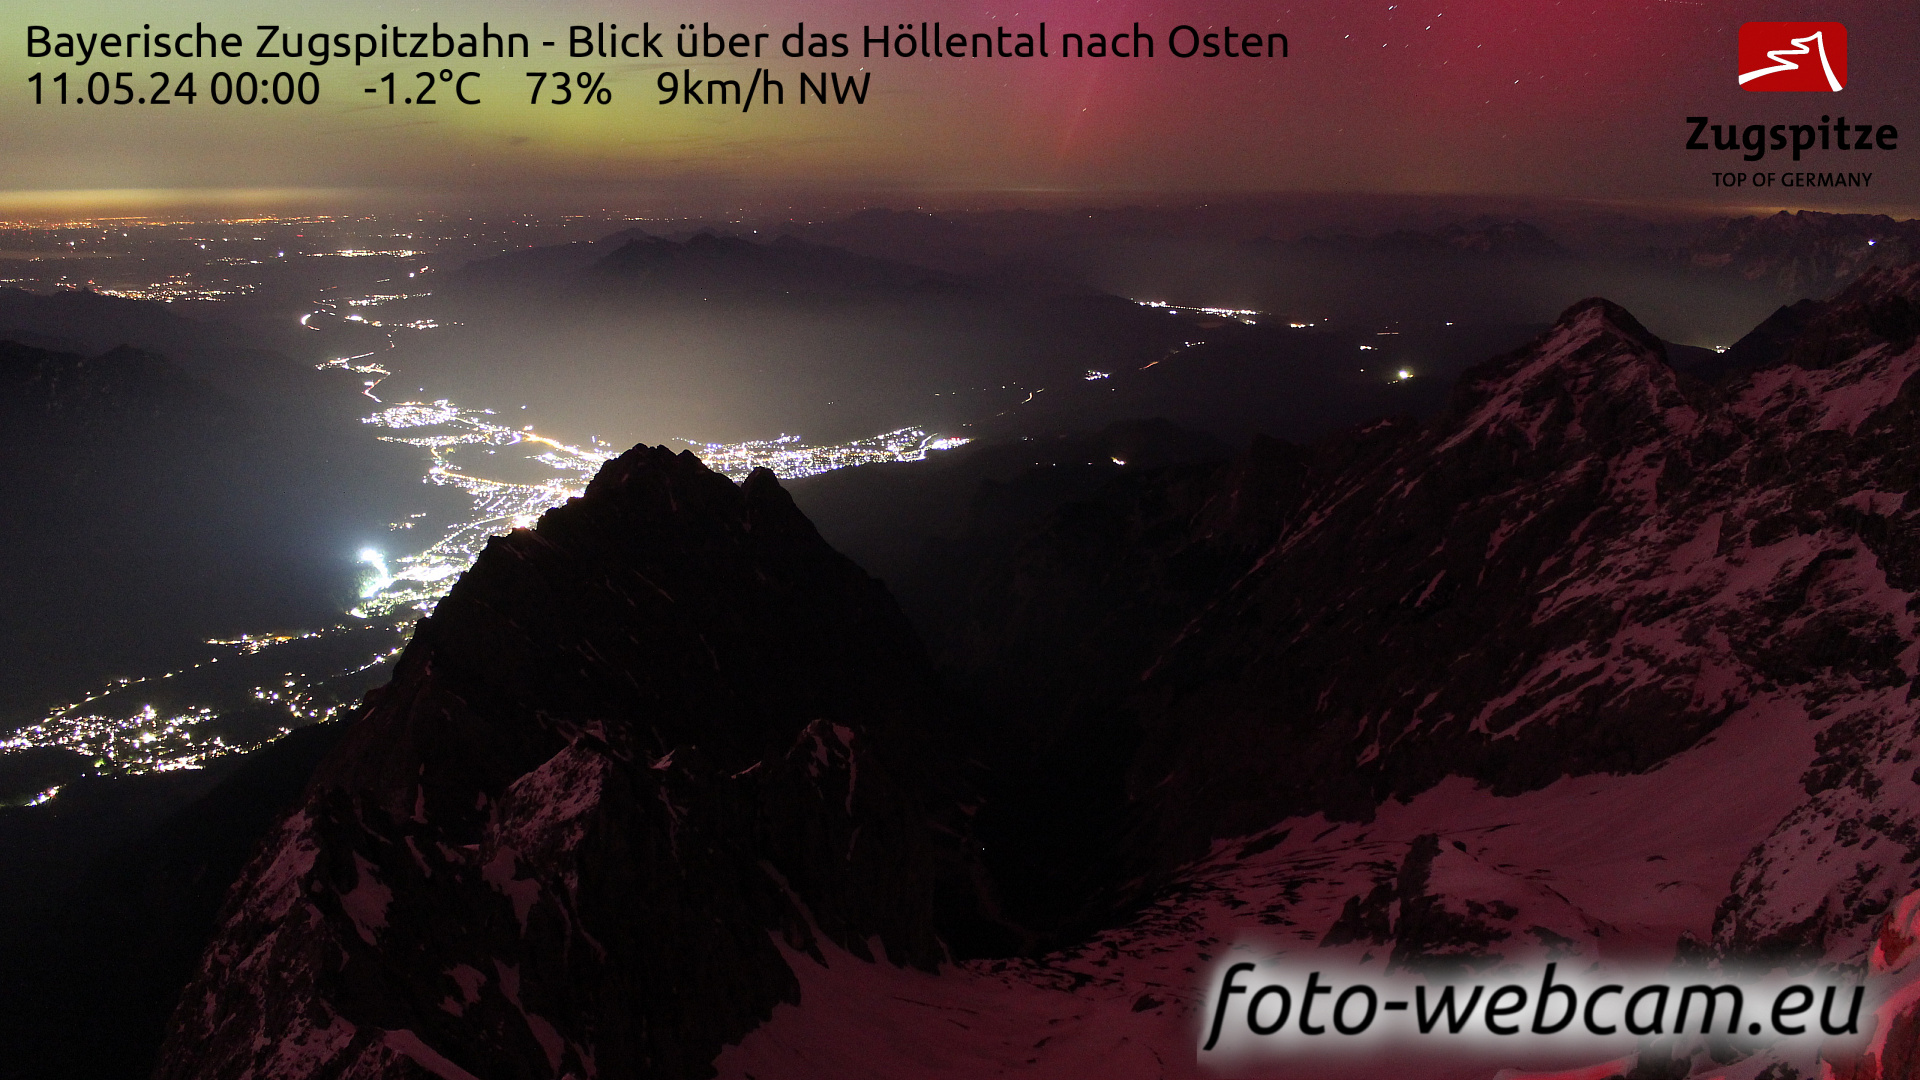 Zugspitze Wed. 00:05